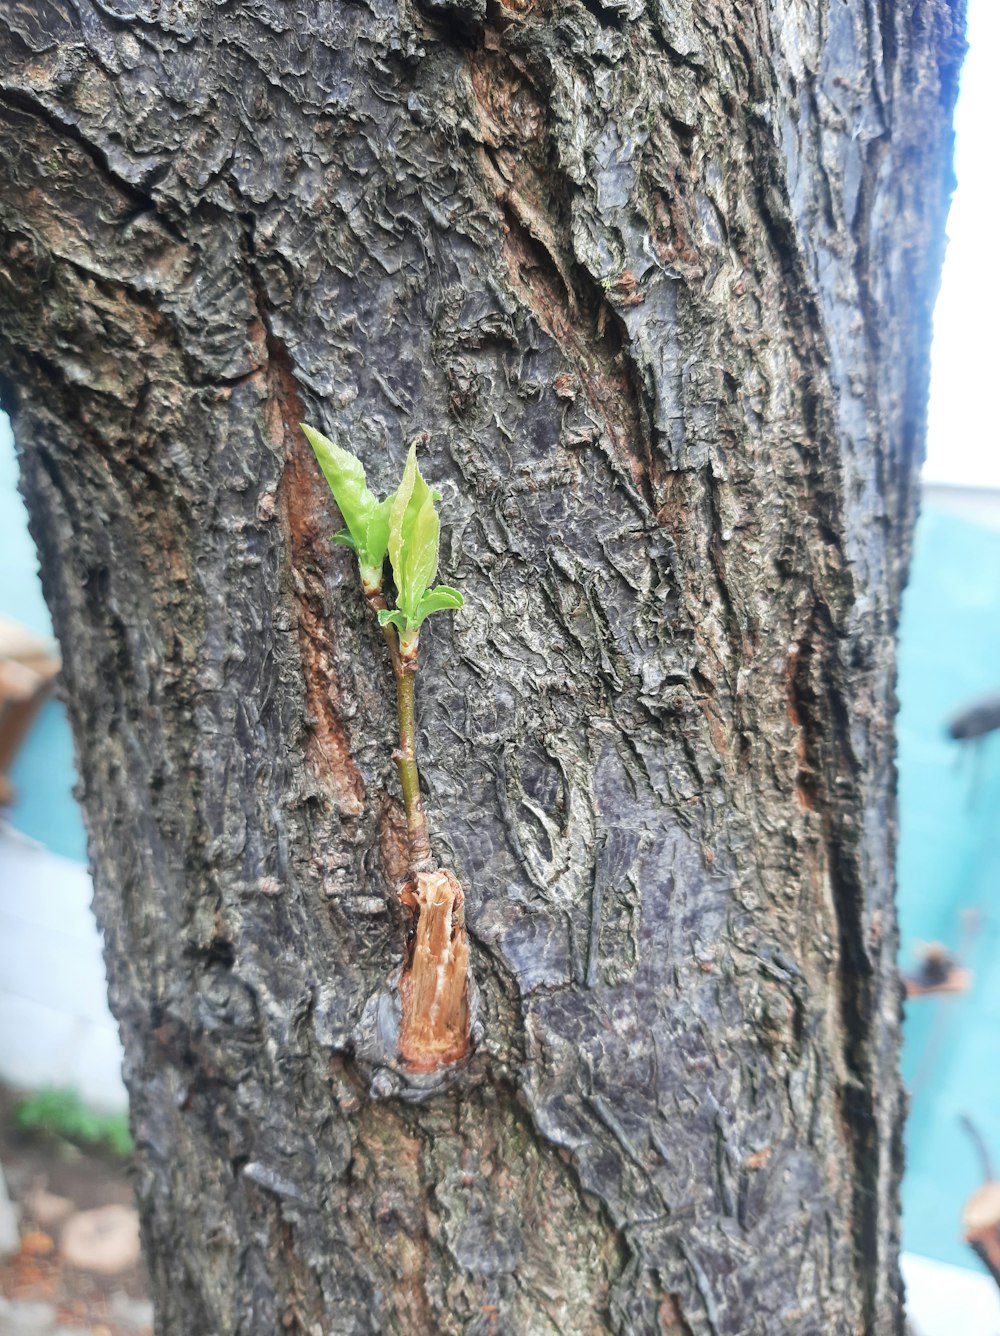 eine kleine grüne Pflanze, die auf der Rinde eines Baumes wächst